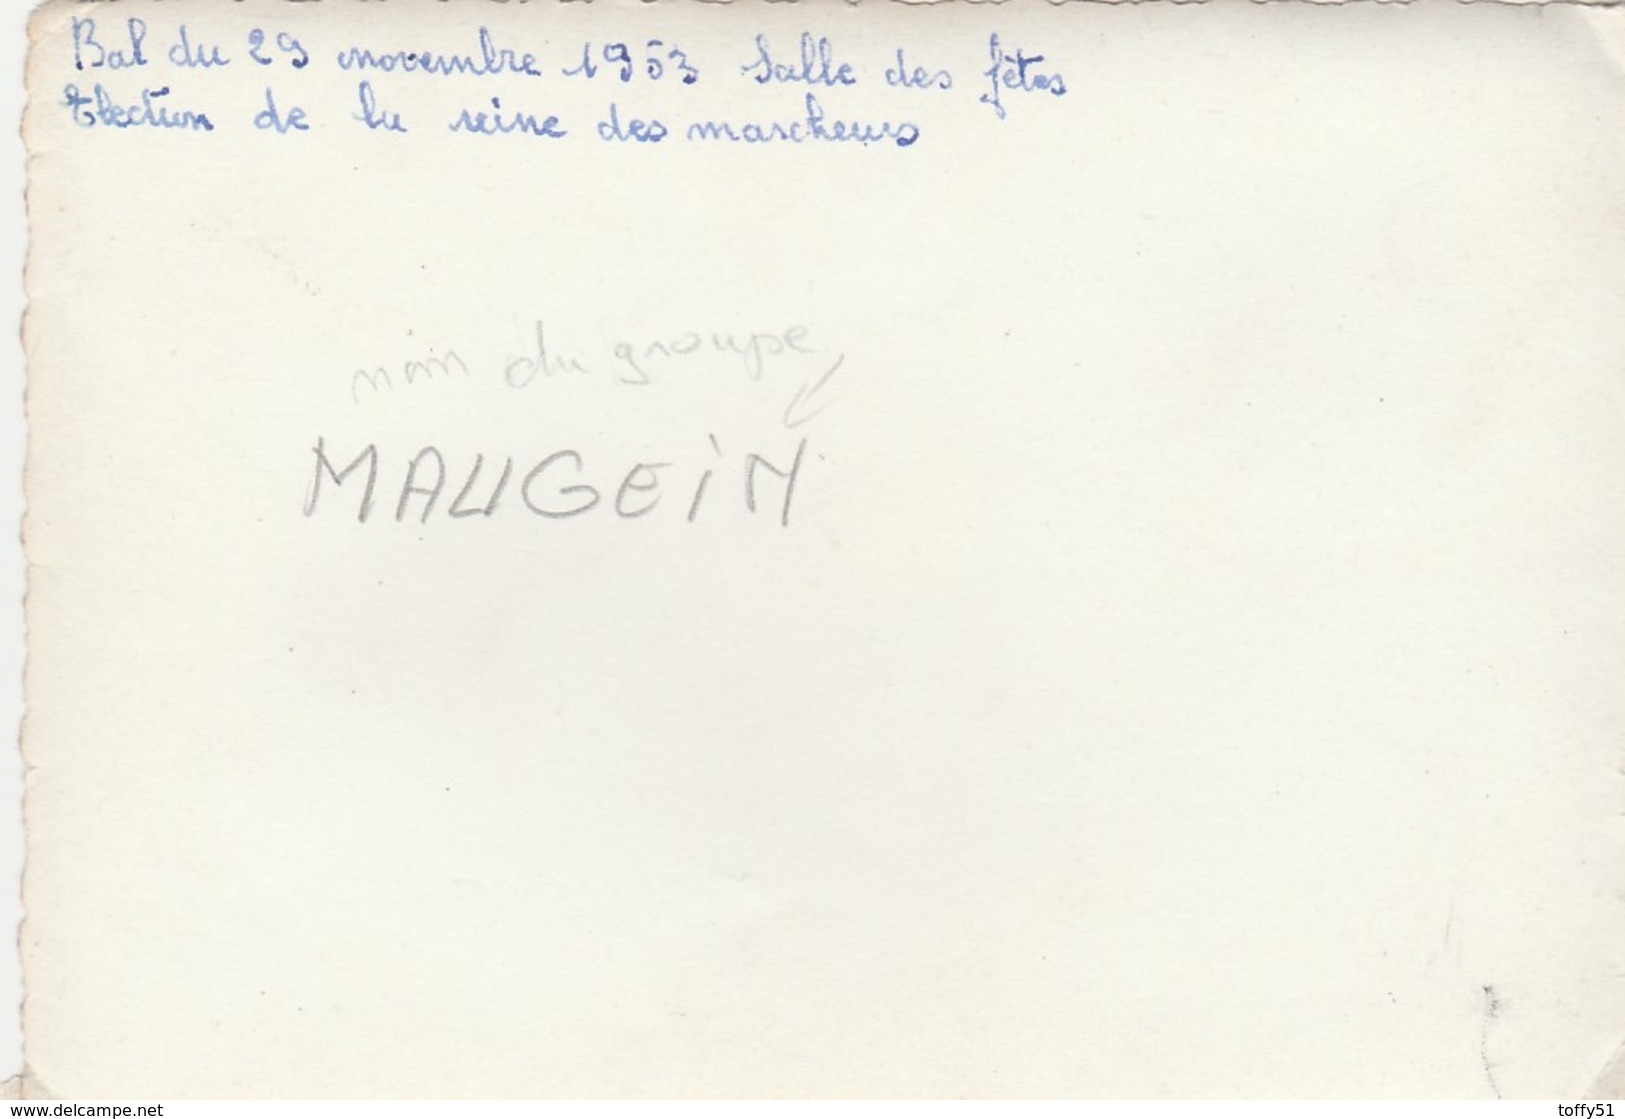 PHOTO (12.5x8.5 Cm) GROUPE ACCORDÉONISTE "MAUGEIN" BAL NOVEMBRE 1953 SALLE DES FÊTES REINE DES MARCHEURS - Singers & Musicians